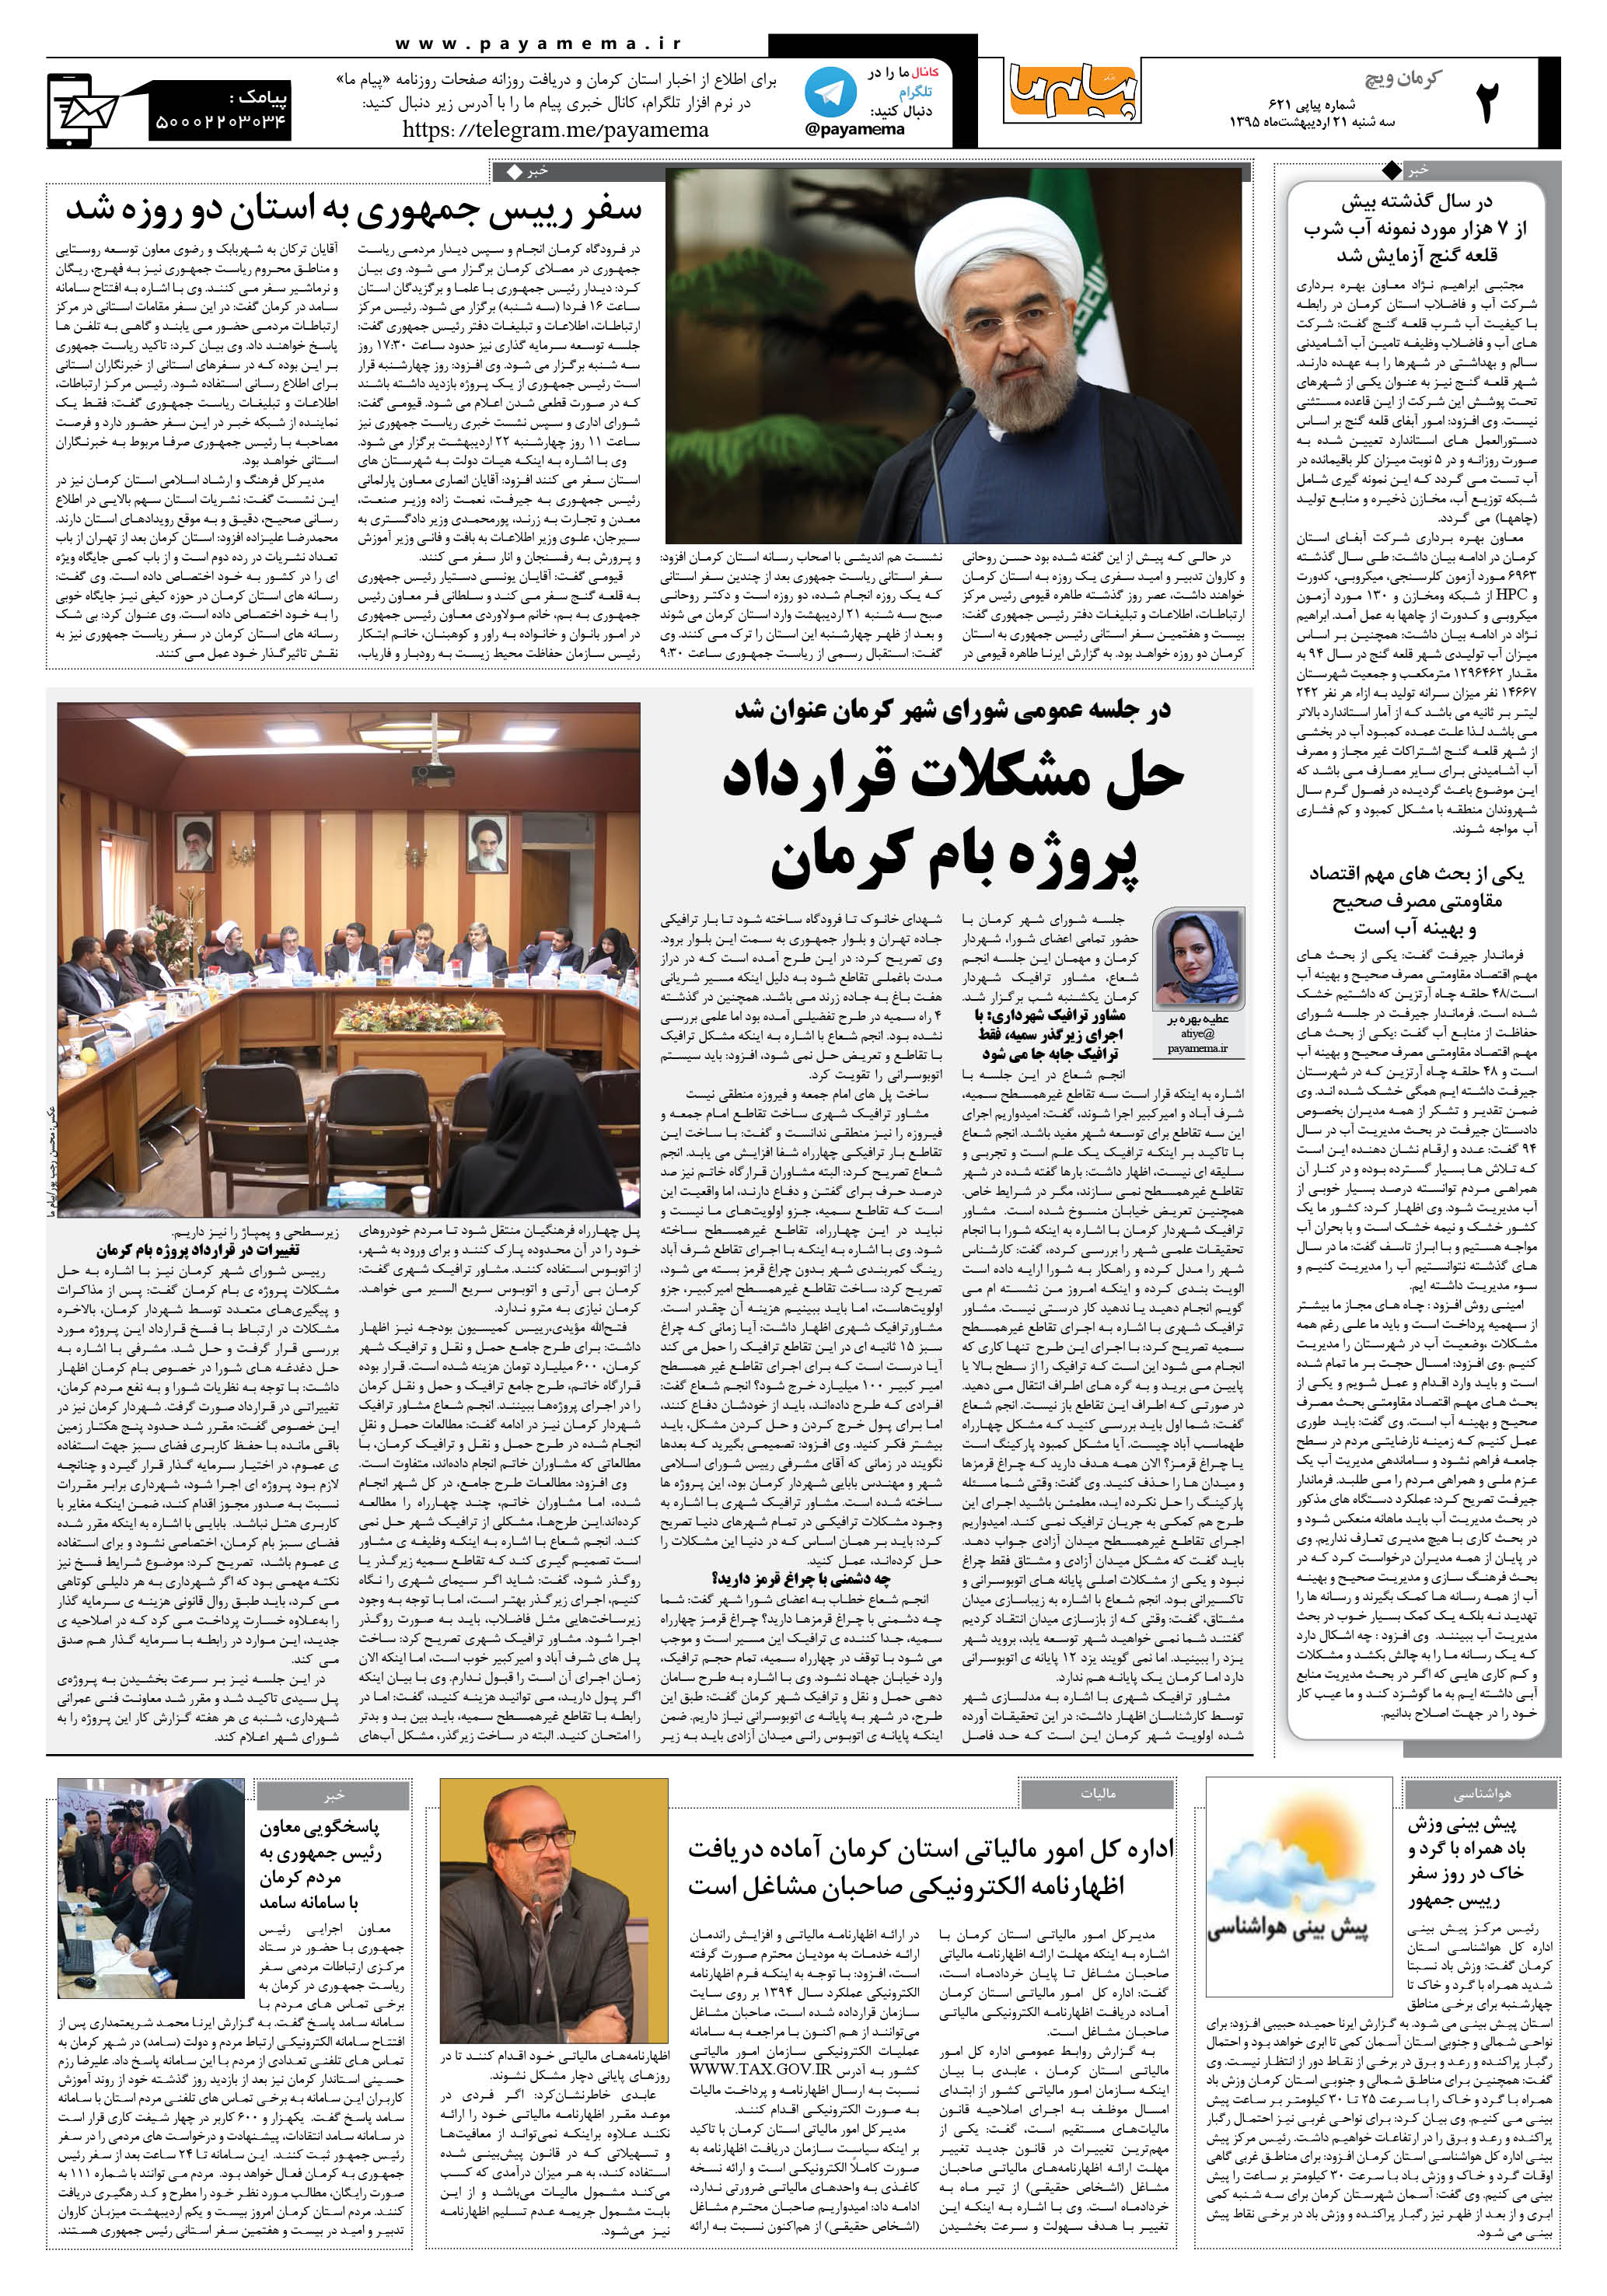 صفحه کرمان ویج شماره 621 روزنامه پیام ما